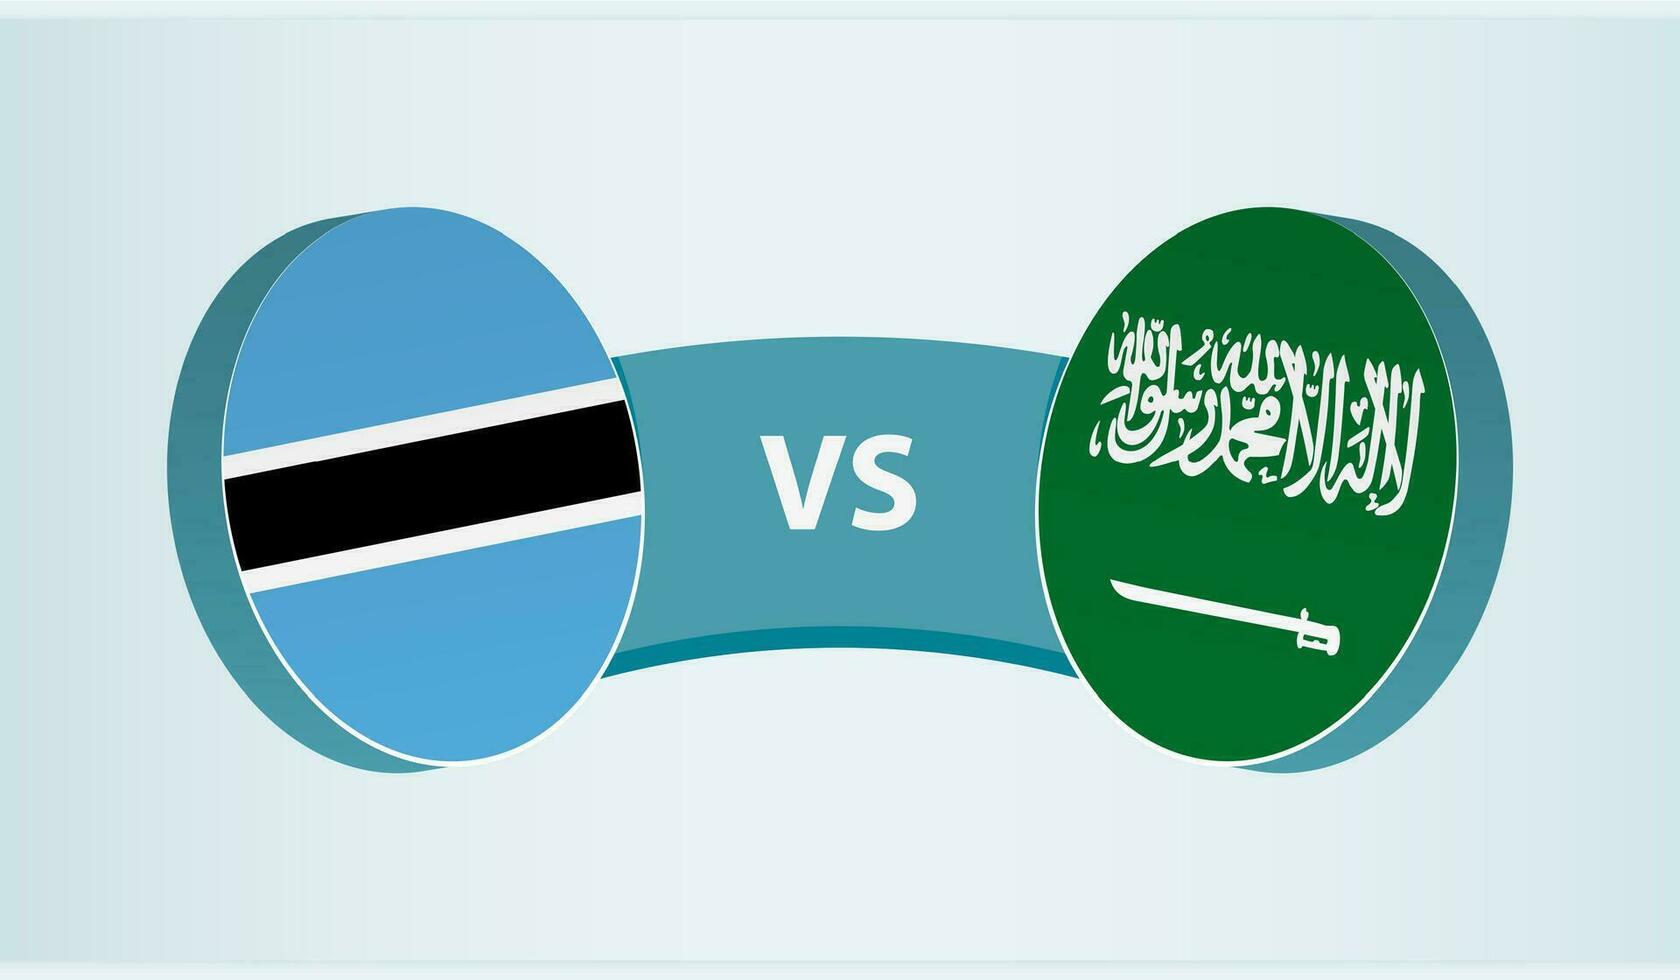 botsuana versus saudita Arábia, equipe Esportes concorrência conceito. vetor